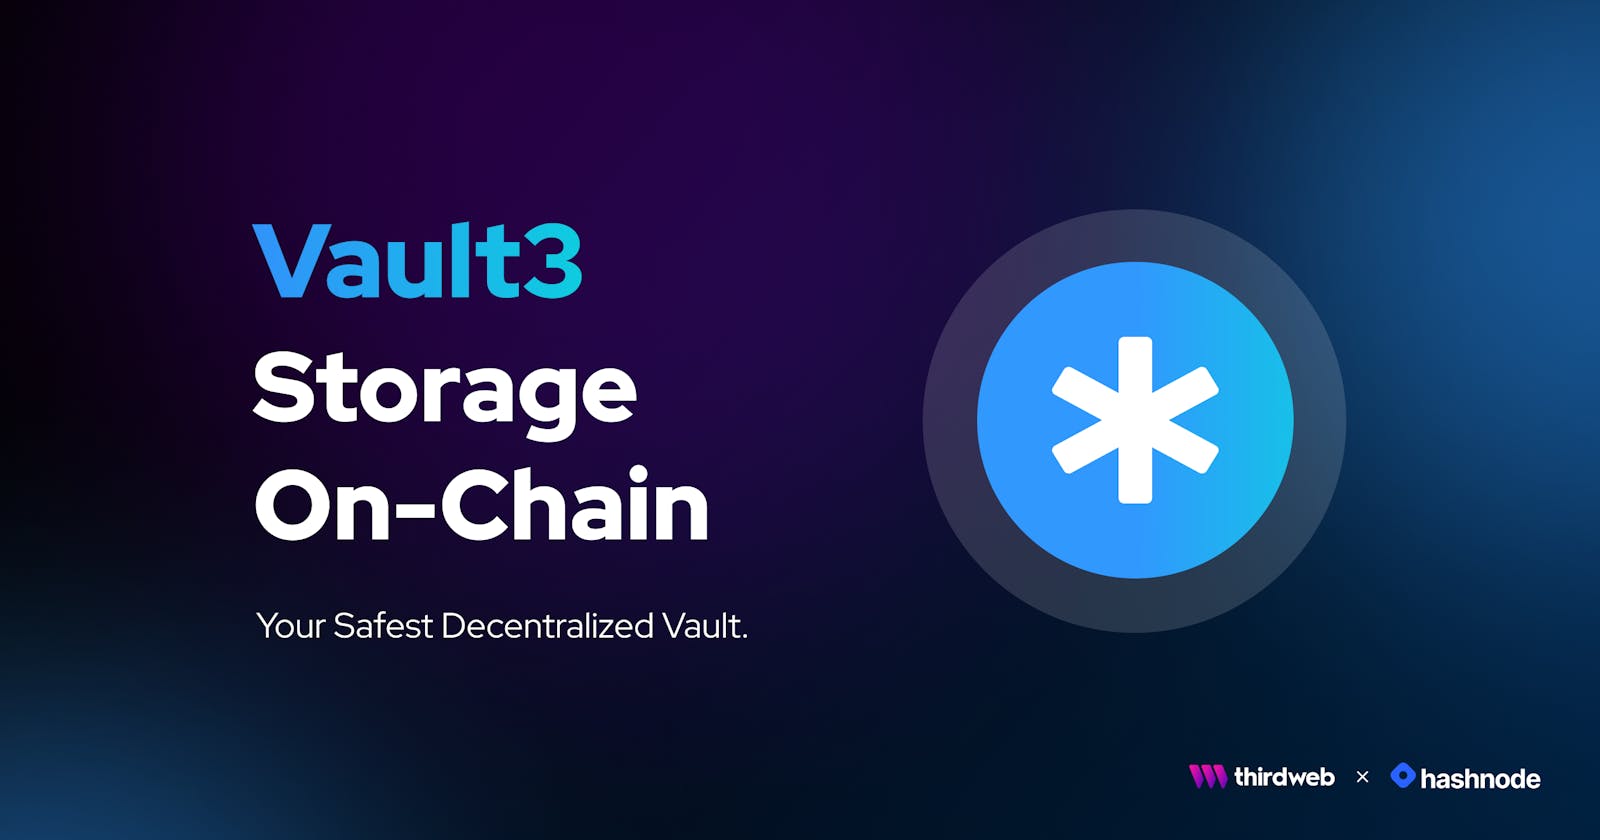 💫 Introducing Vault3 - Your safest decentralized vault!